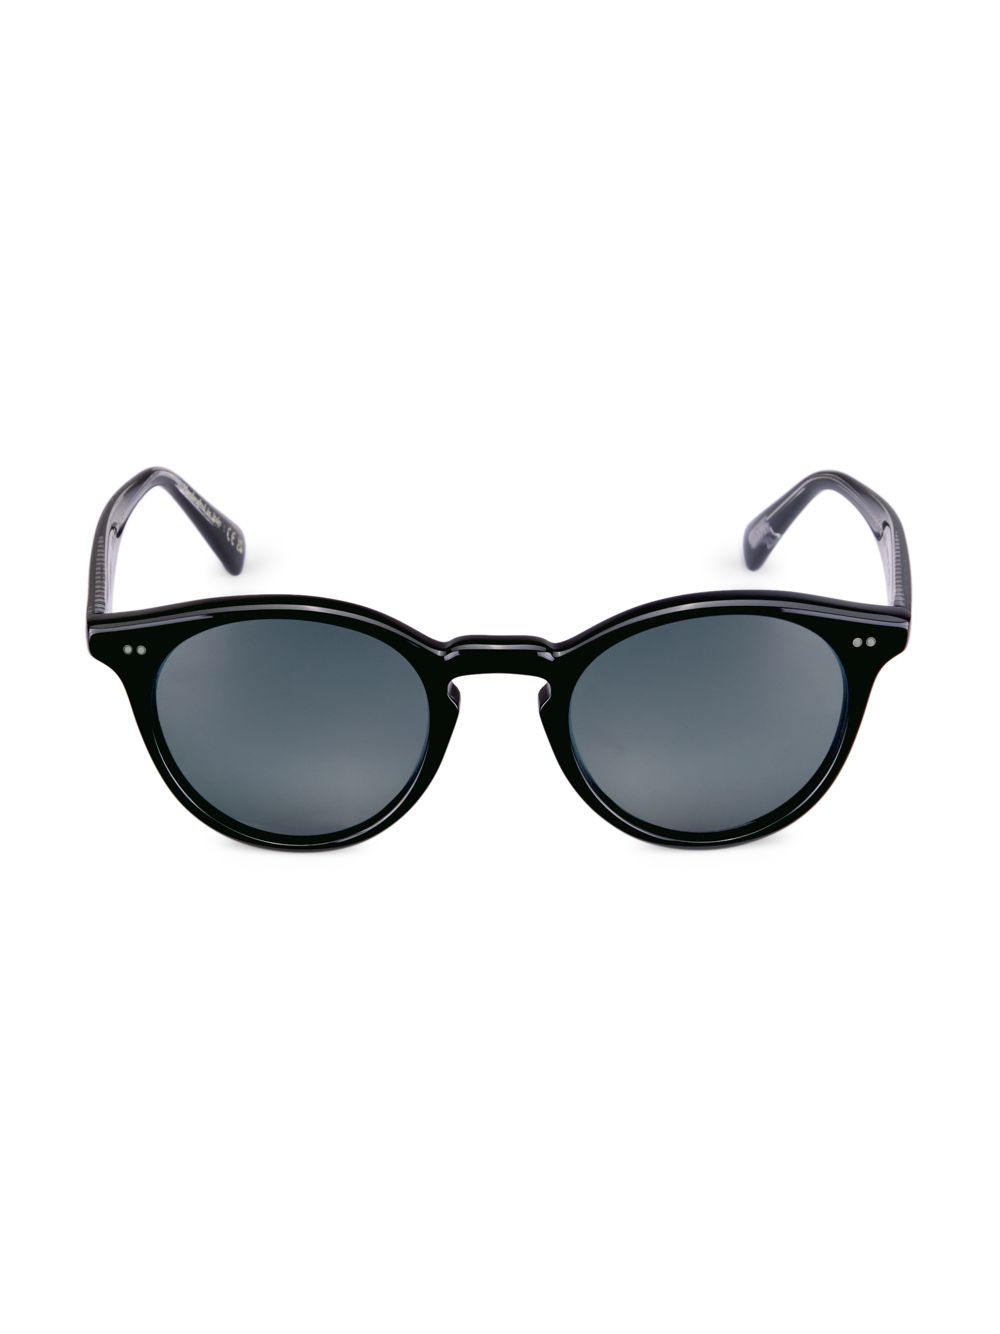 Солнцезащитные очки Romare Oliver Peoples, черный солнцезащитные очки oliver peoples x khaite 1983c белый